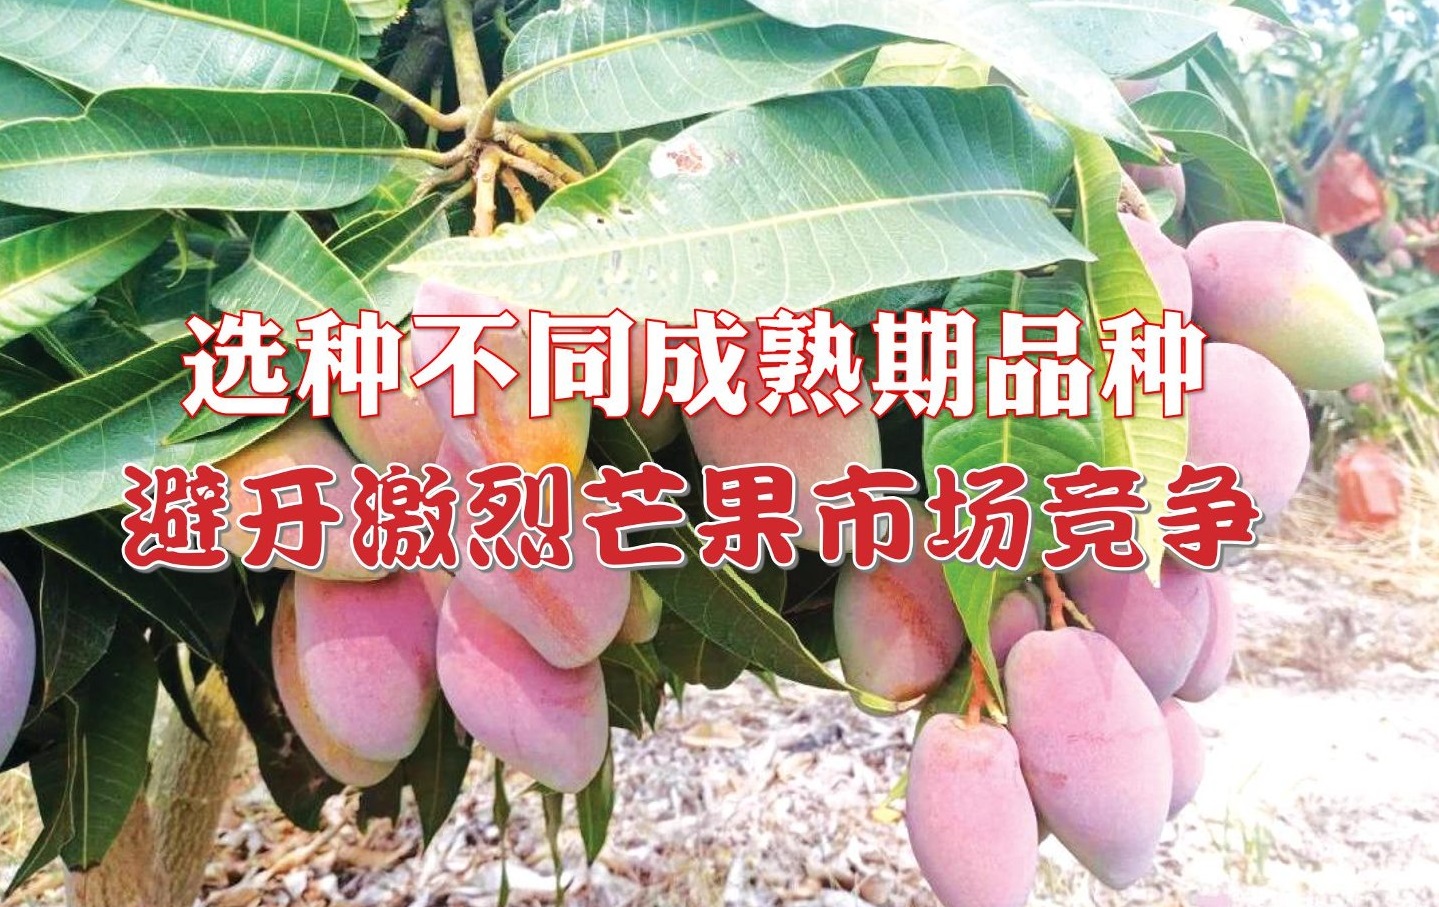 选种不同成熟期品种 避开激烈芒果市场竞争 - 农牧世界